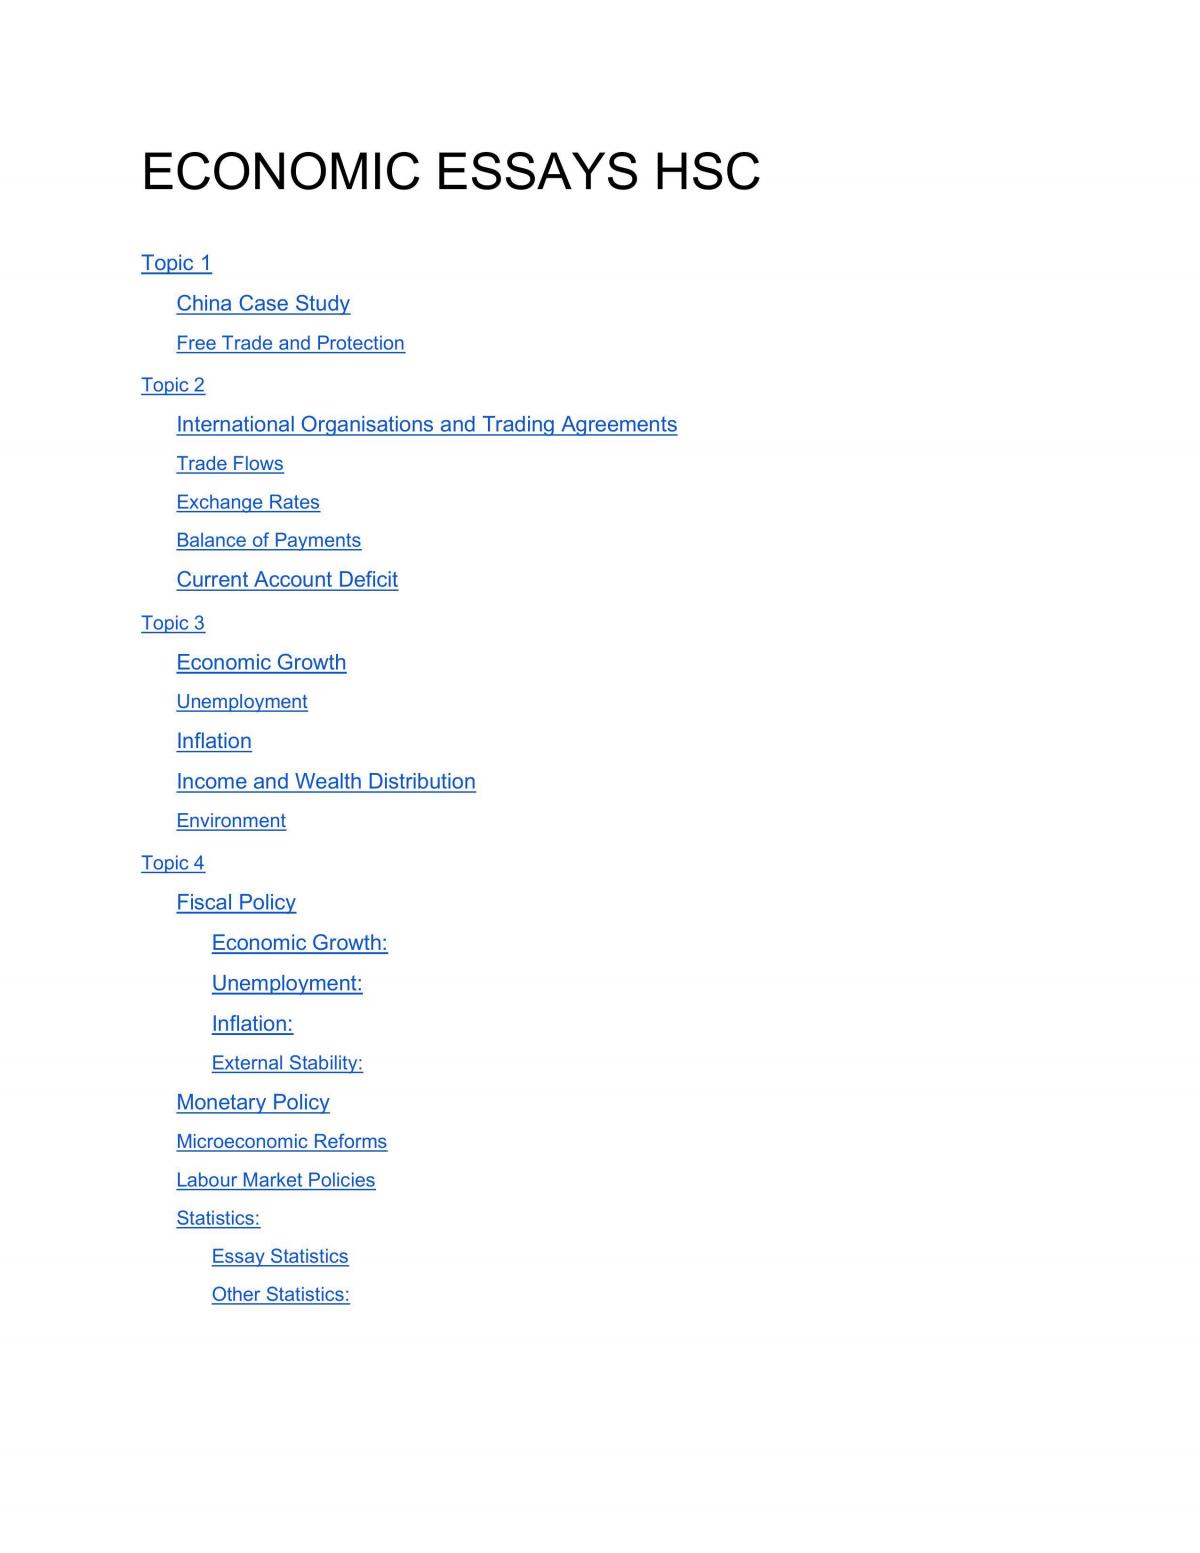 50 excellent extended essays economics